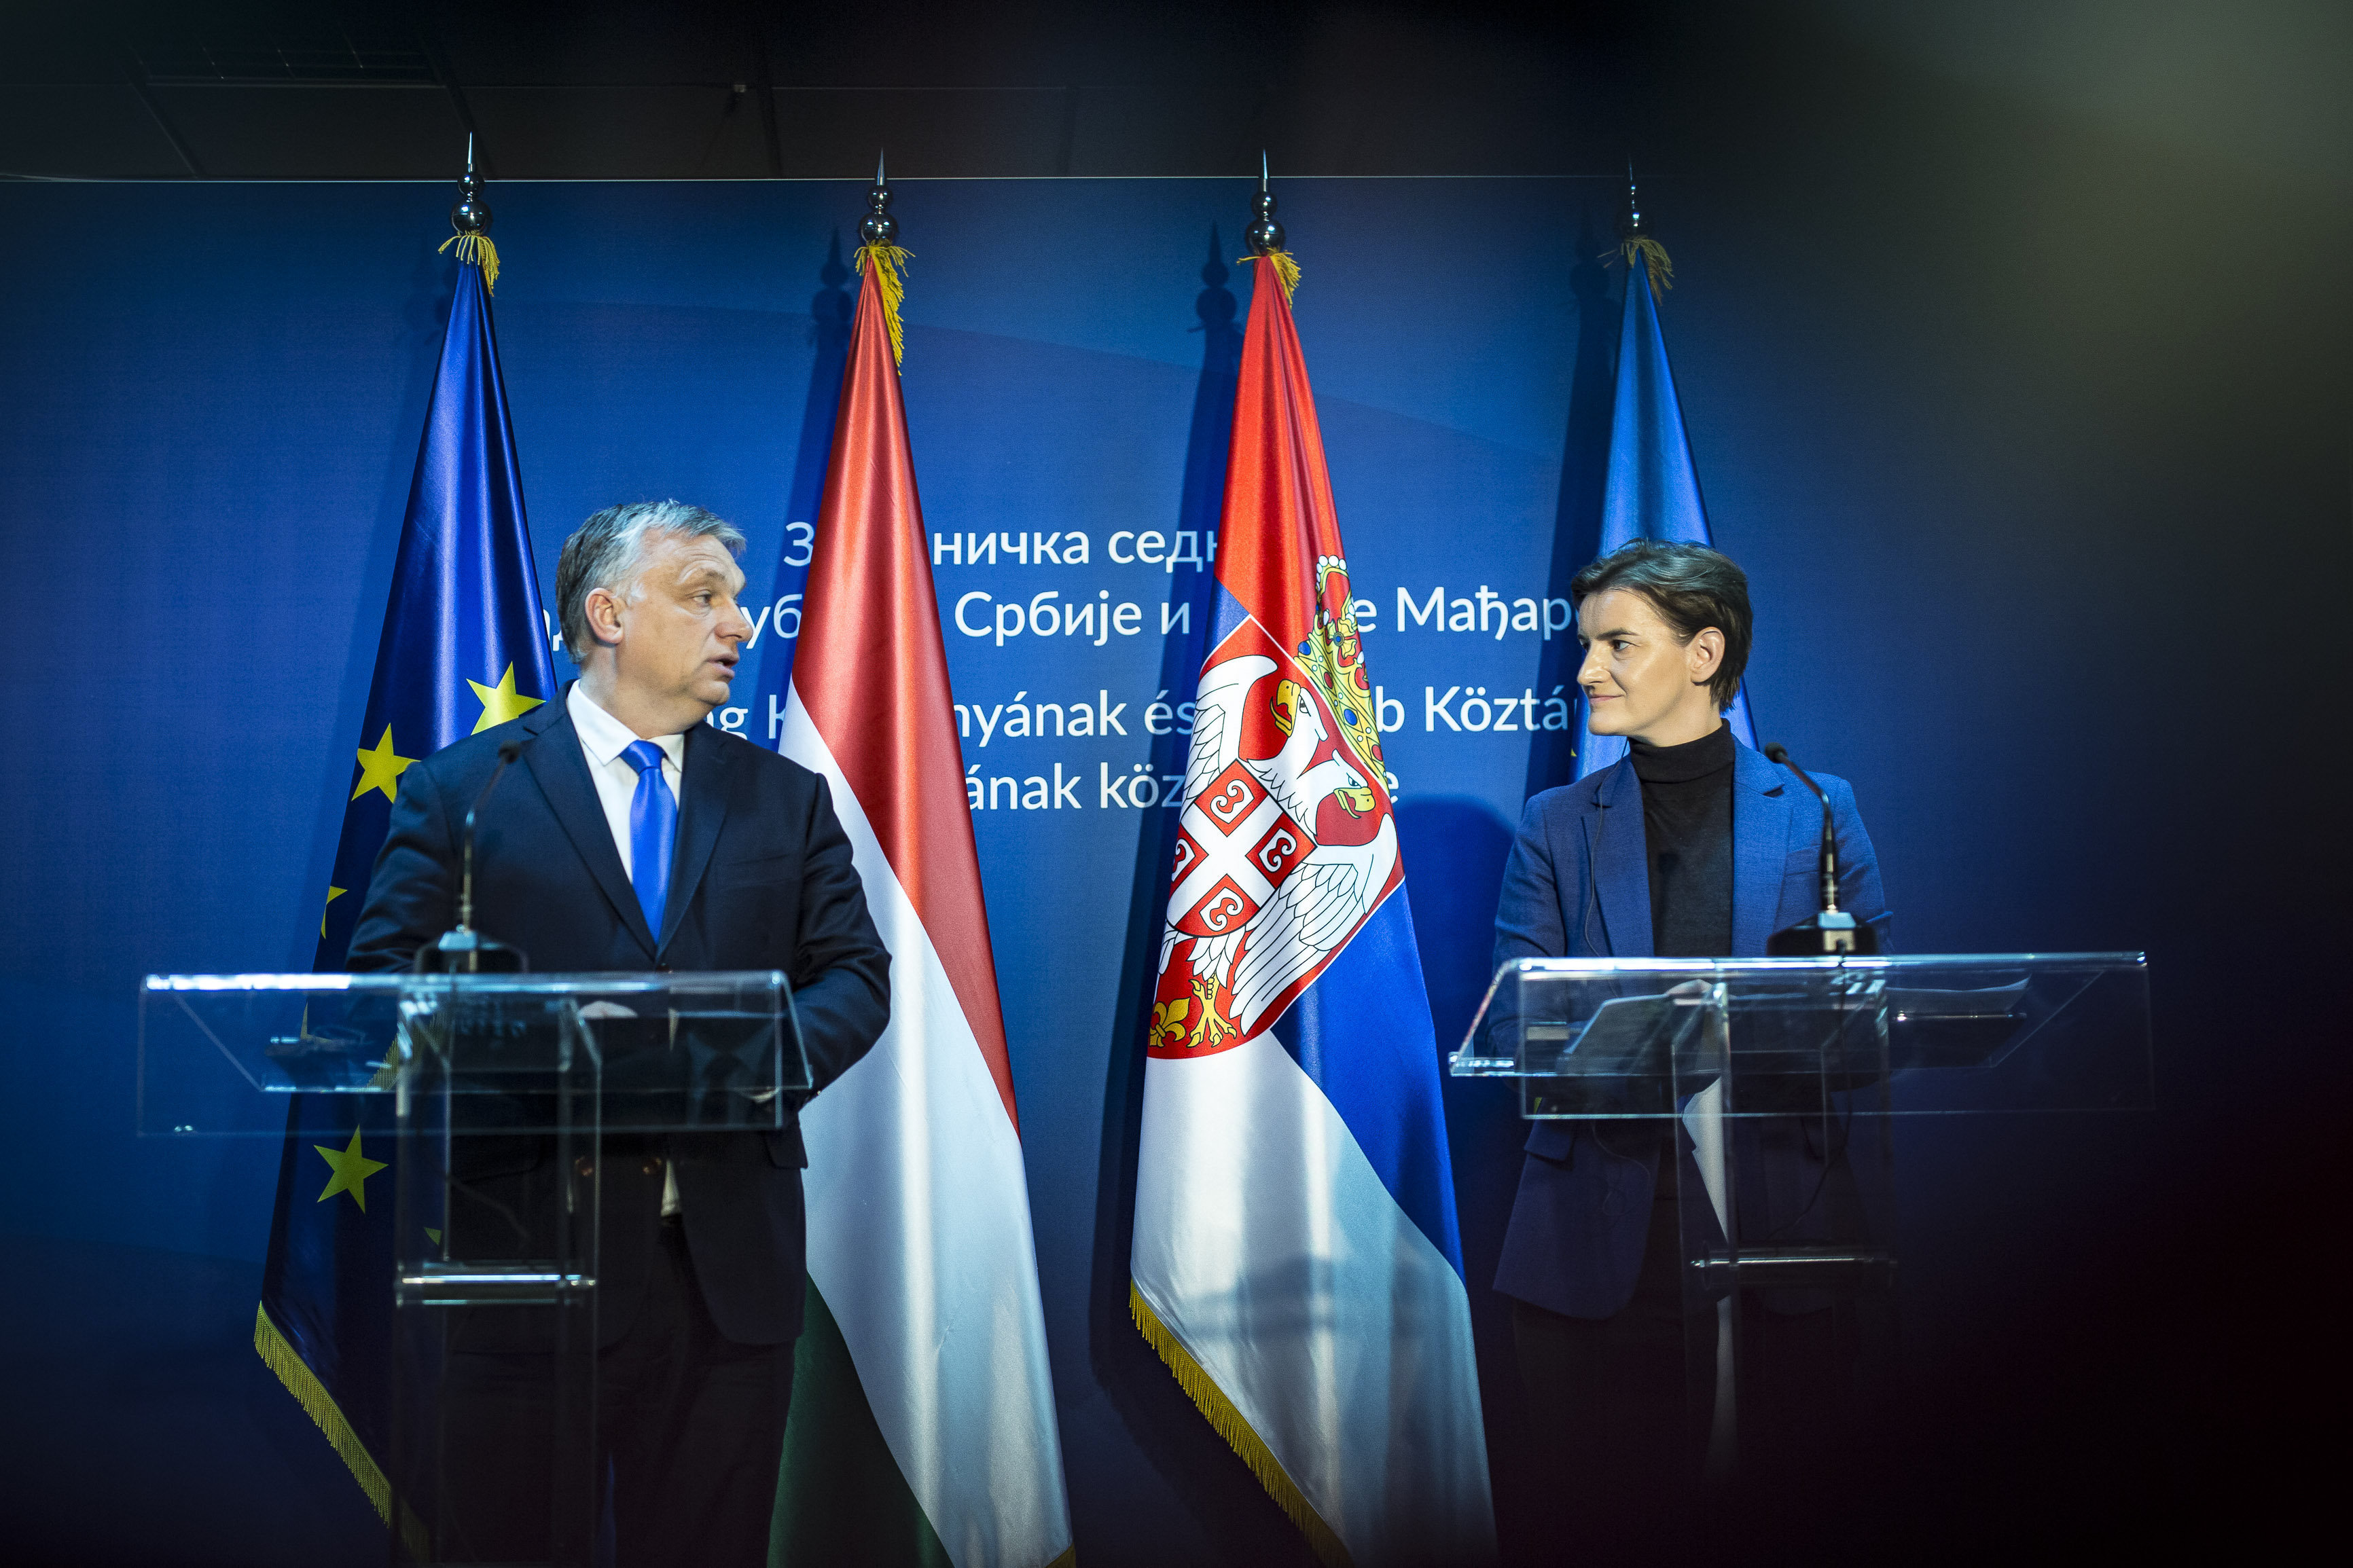 Sesión conjunta de los gobiernos serbio y húngaro celebrada en Serbia